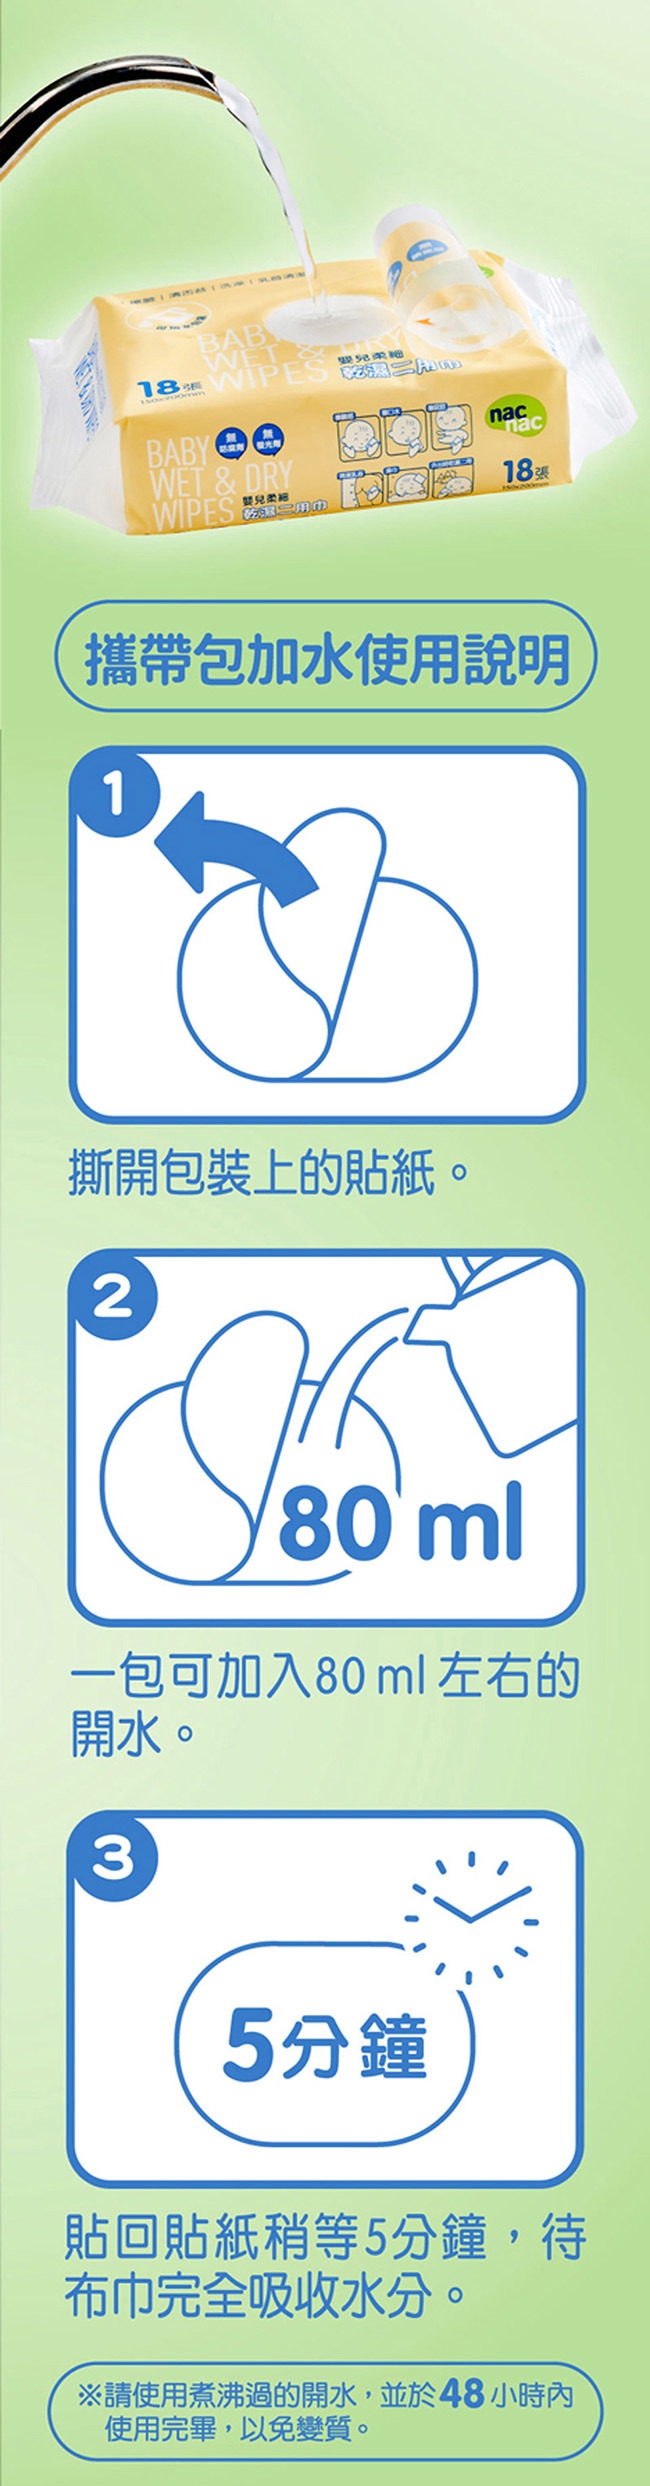 【暢貨】nac nac 防蹣抗菌洗衣精3補充包 + 二用紗布巾6包